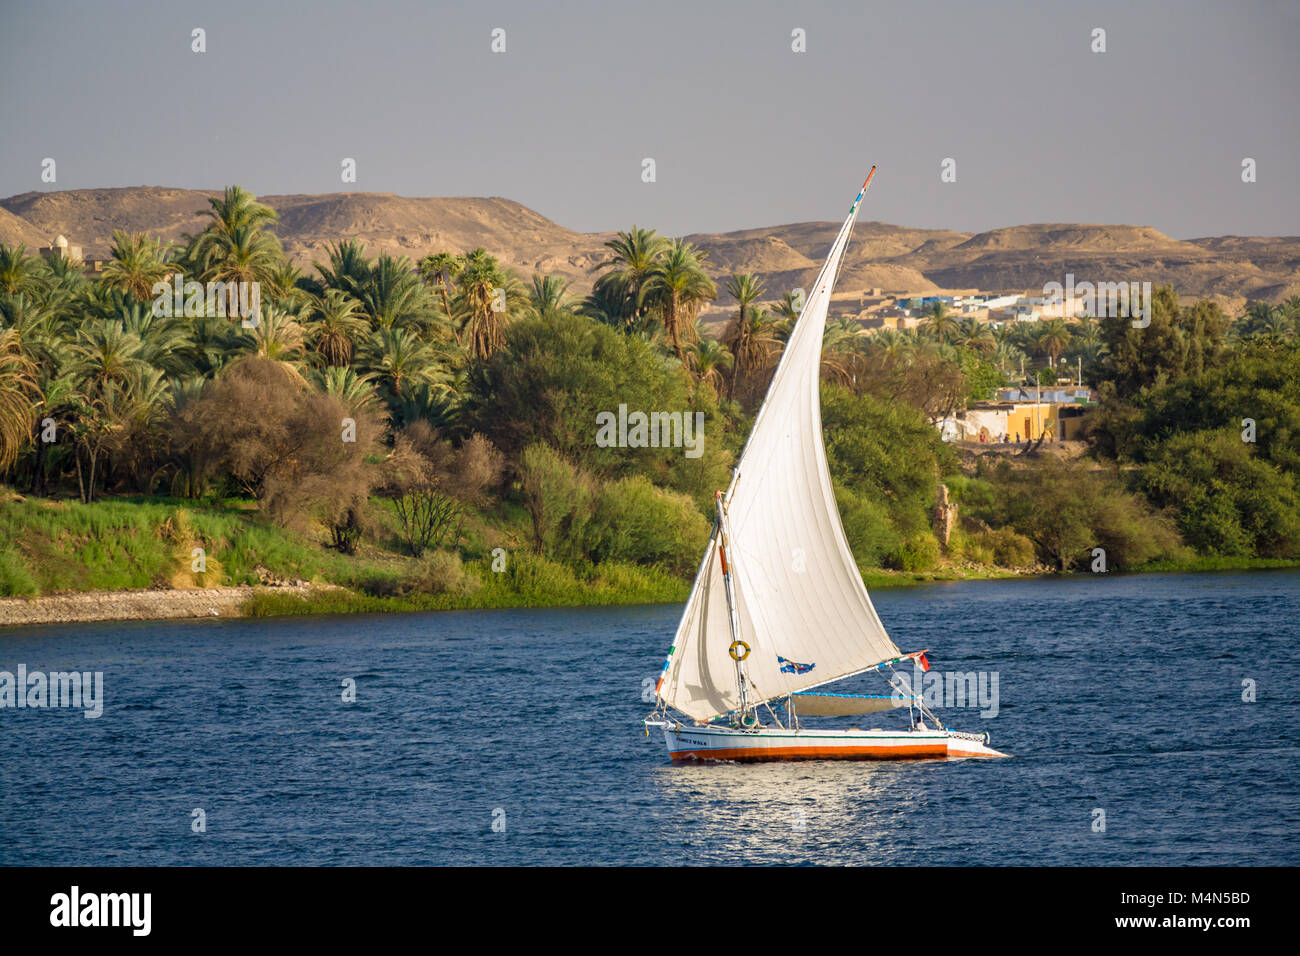 Une felouque, un voilier traditionnel égyptien Egypte Photo Stock - Alamy